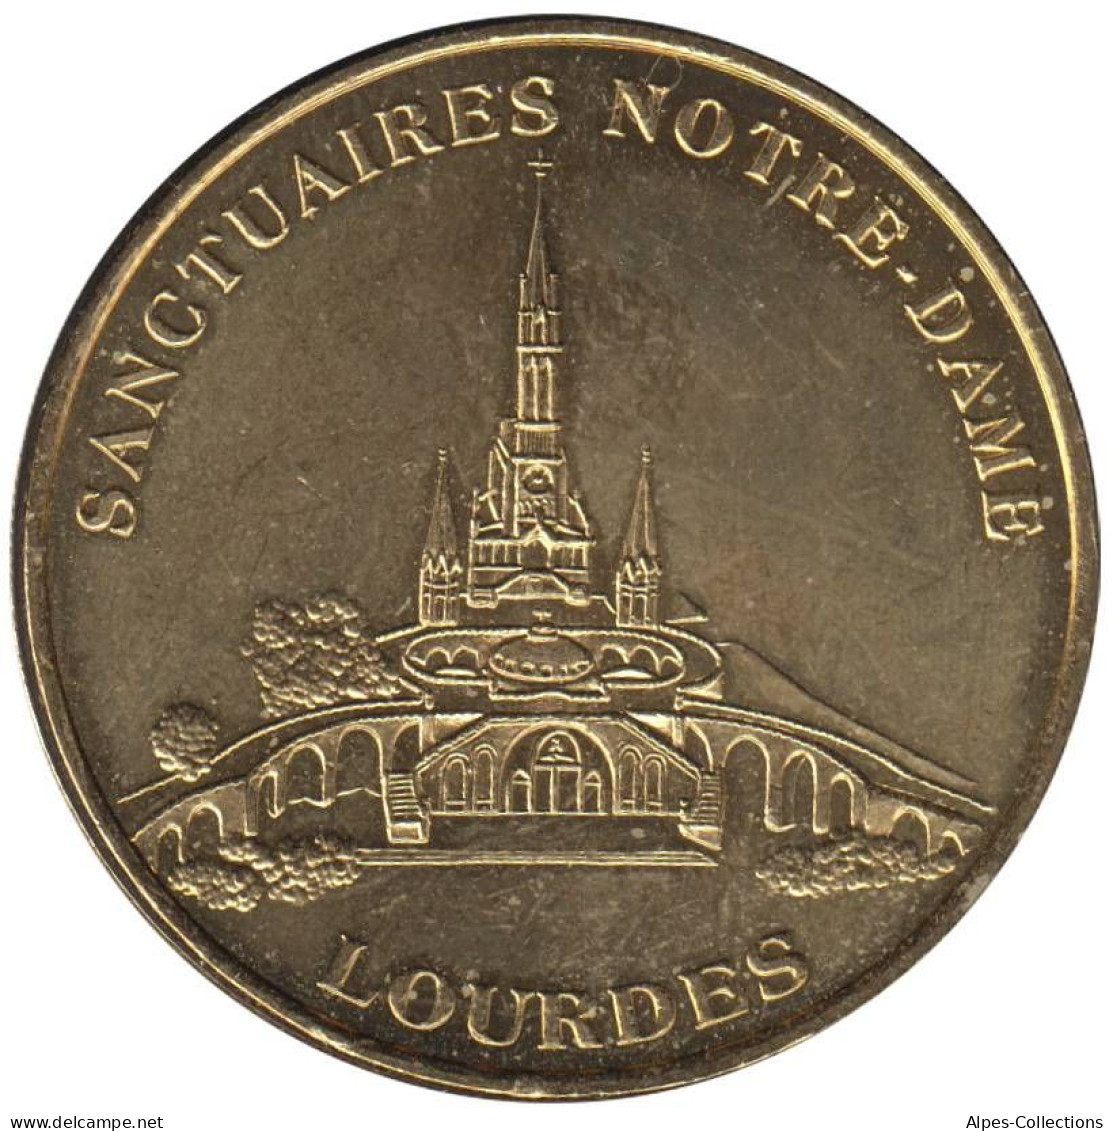 65-0207 - JETON TOURISTIQUE MDP - Lourdes - Sanctuaires - Avec Différent - ND.4 - Ohne Datum